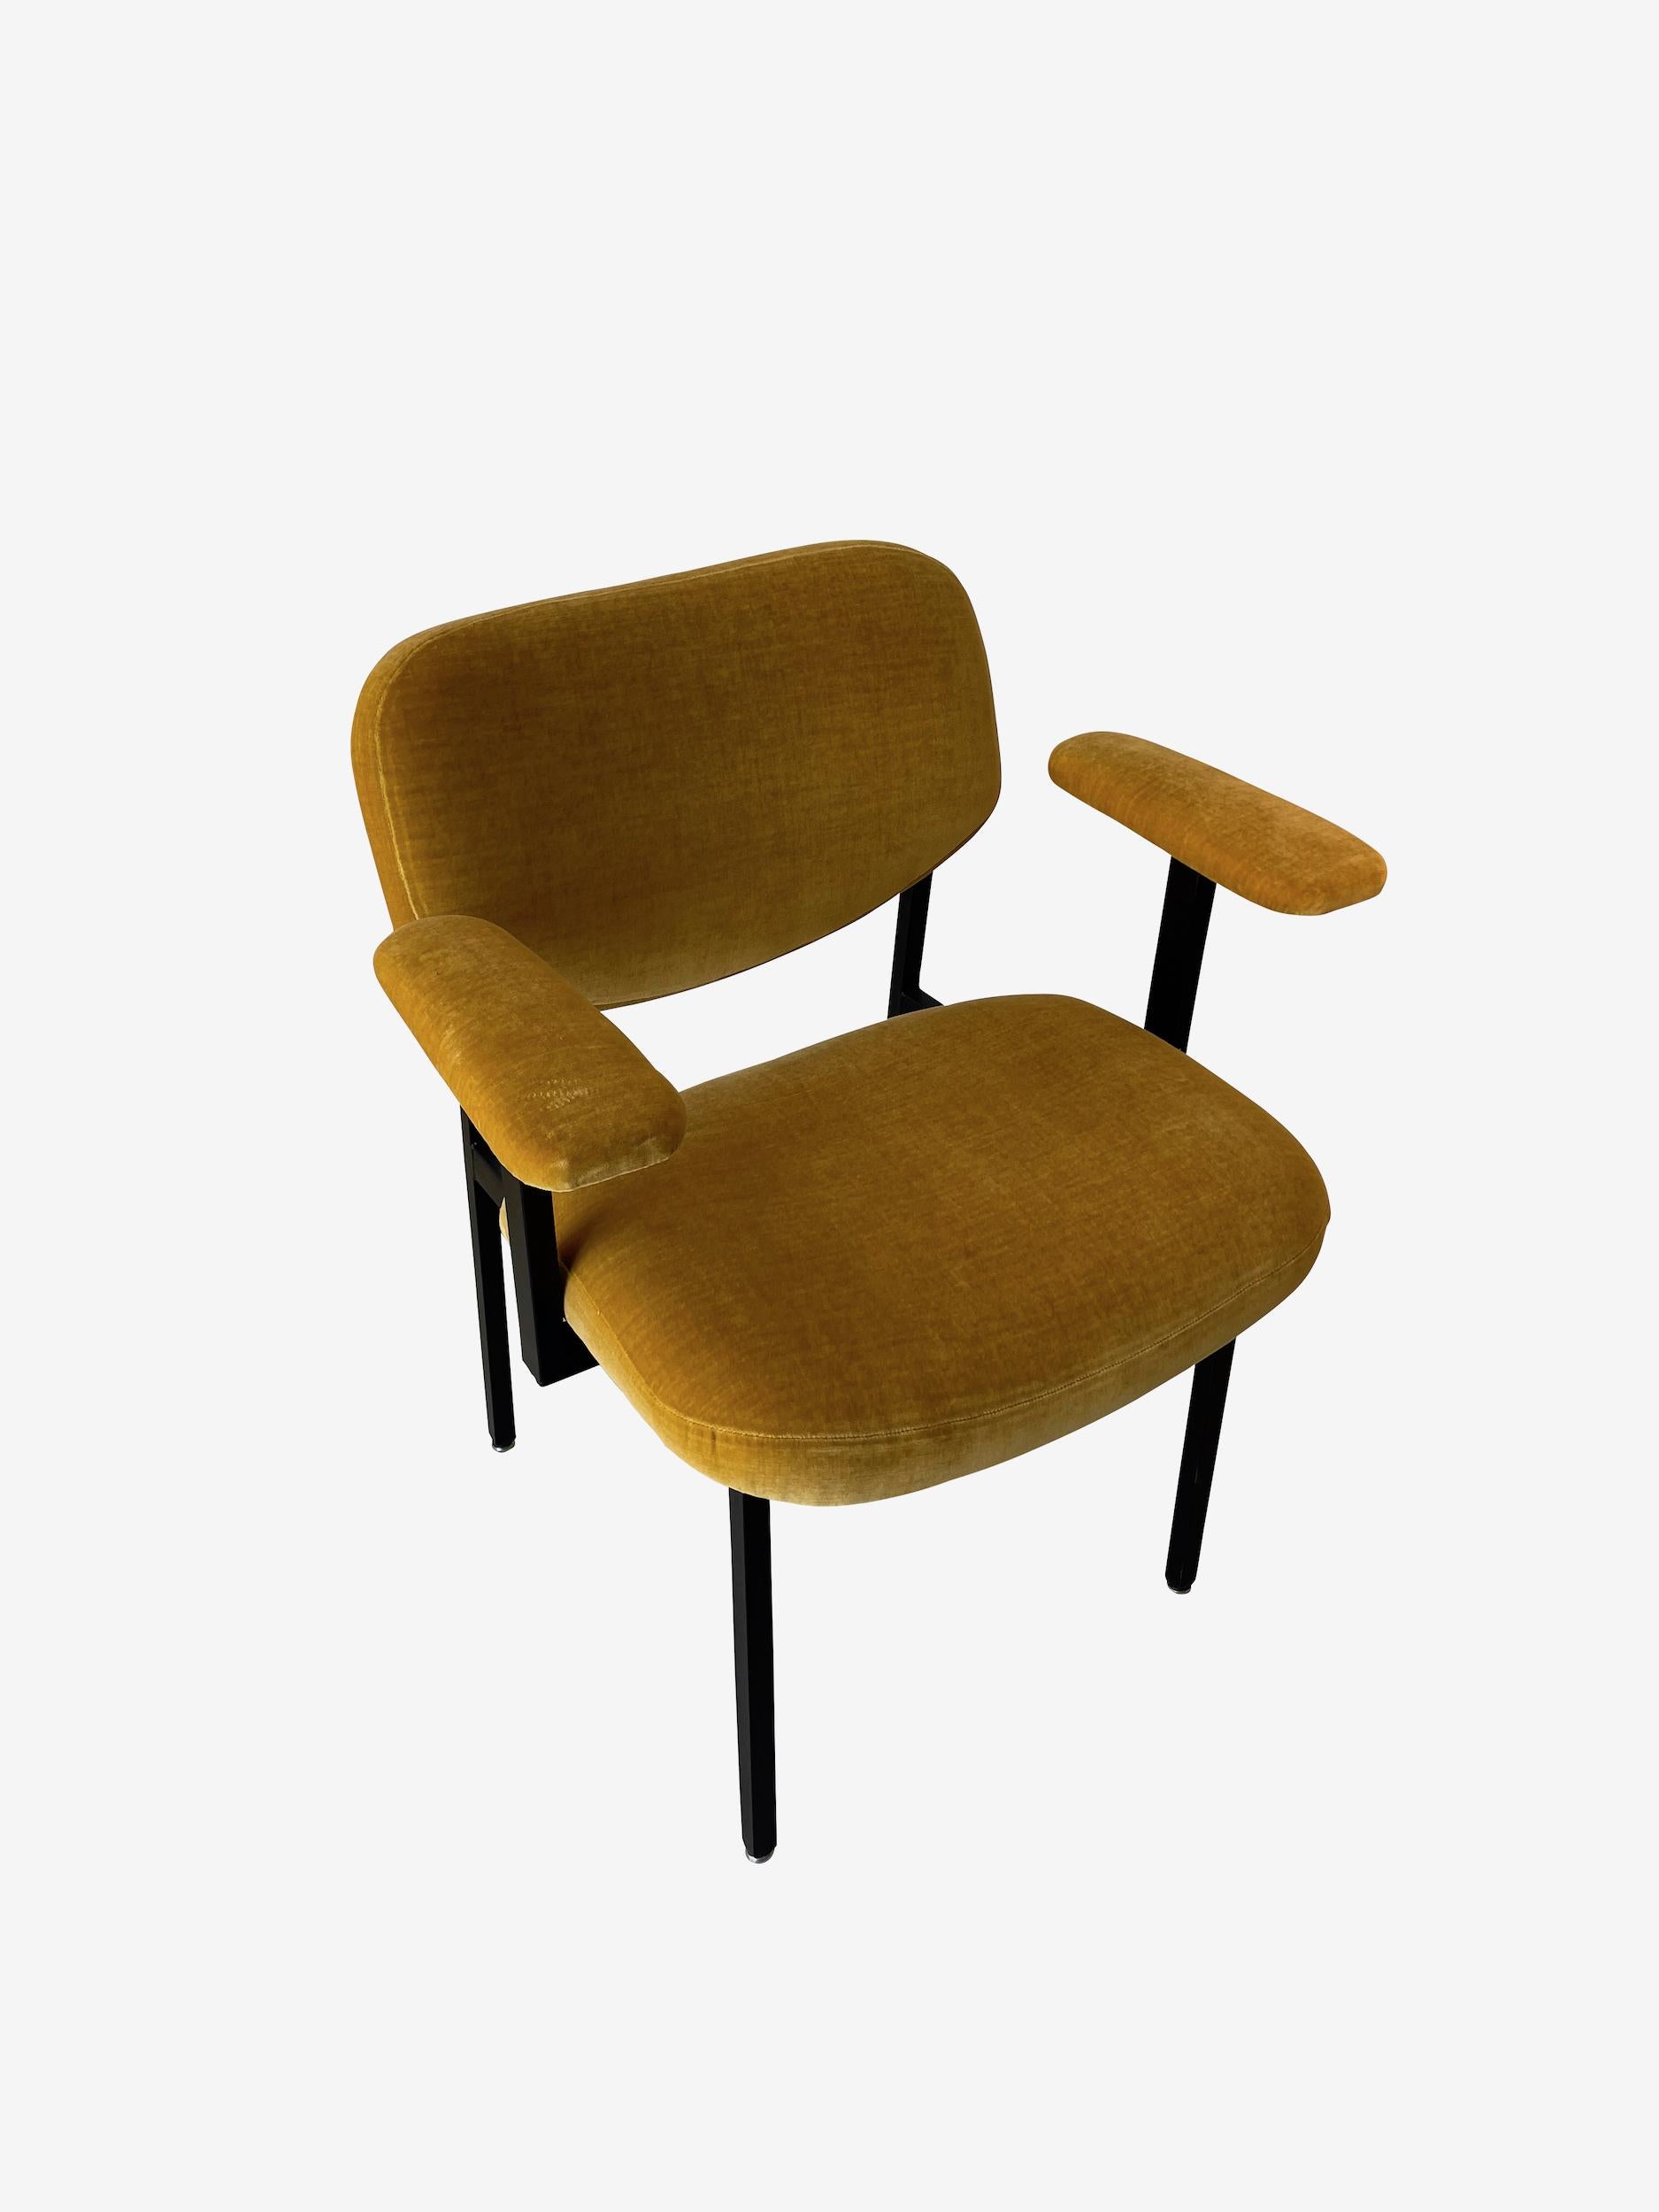 1960's Italienisch Paar schwarz matt Eisen umrahmt bewaffnete Stühle Seite.
Gebogene Rückenlehne und Sitzfläche. 
Sehr bequem.
Neu gepolstert.
